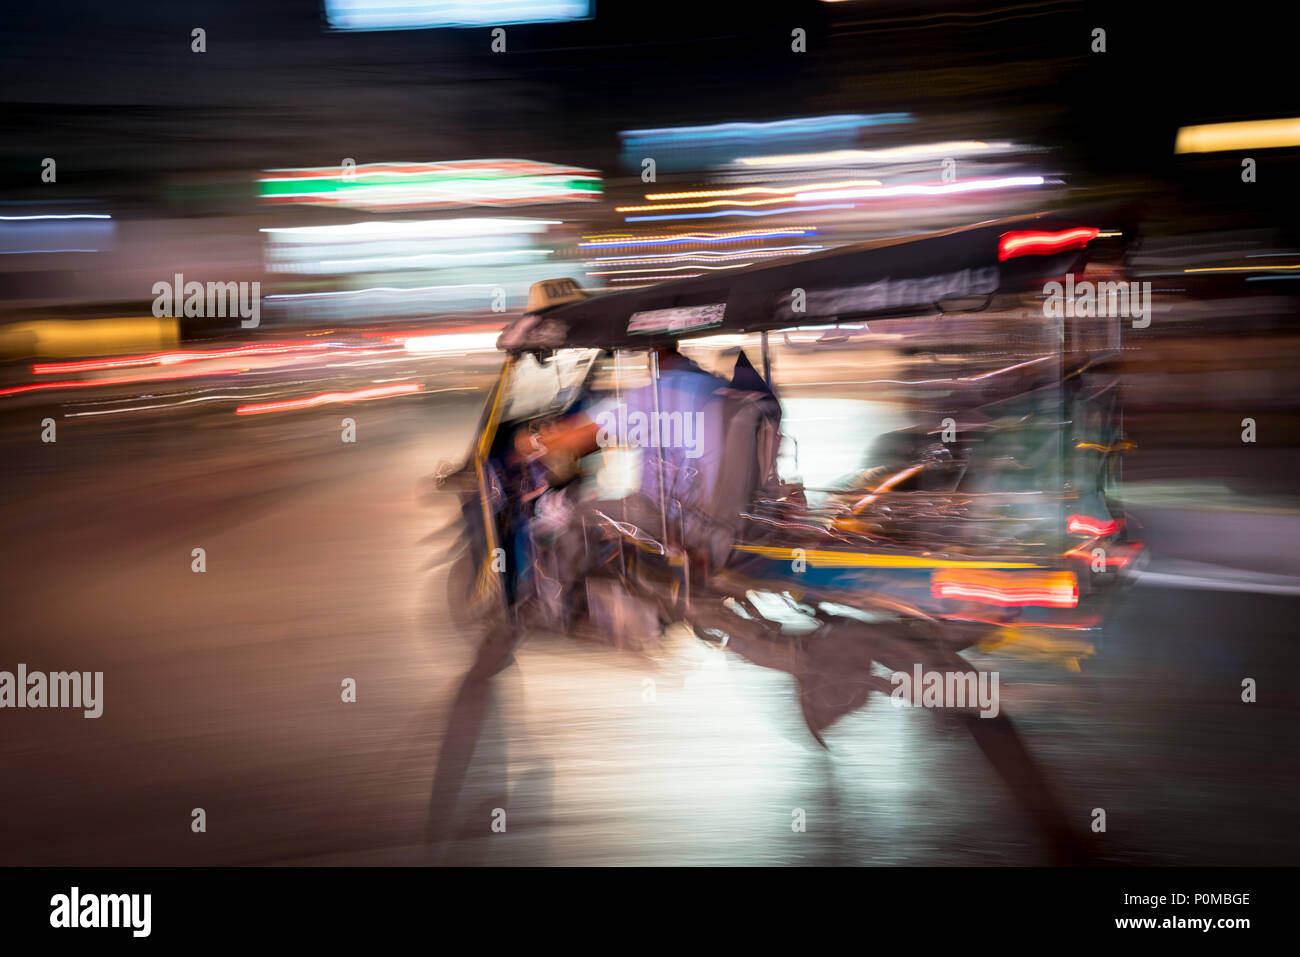 Abstrakte panning Technik schaffen Bewegung&Unschärfe eines tuktuk Fahrzeug fahren in der Dunkelheit auf den Straßen von Chiang Mai im Norden von Thailand Stockfoto